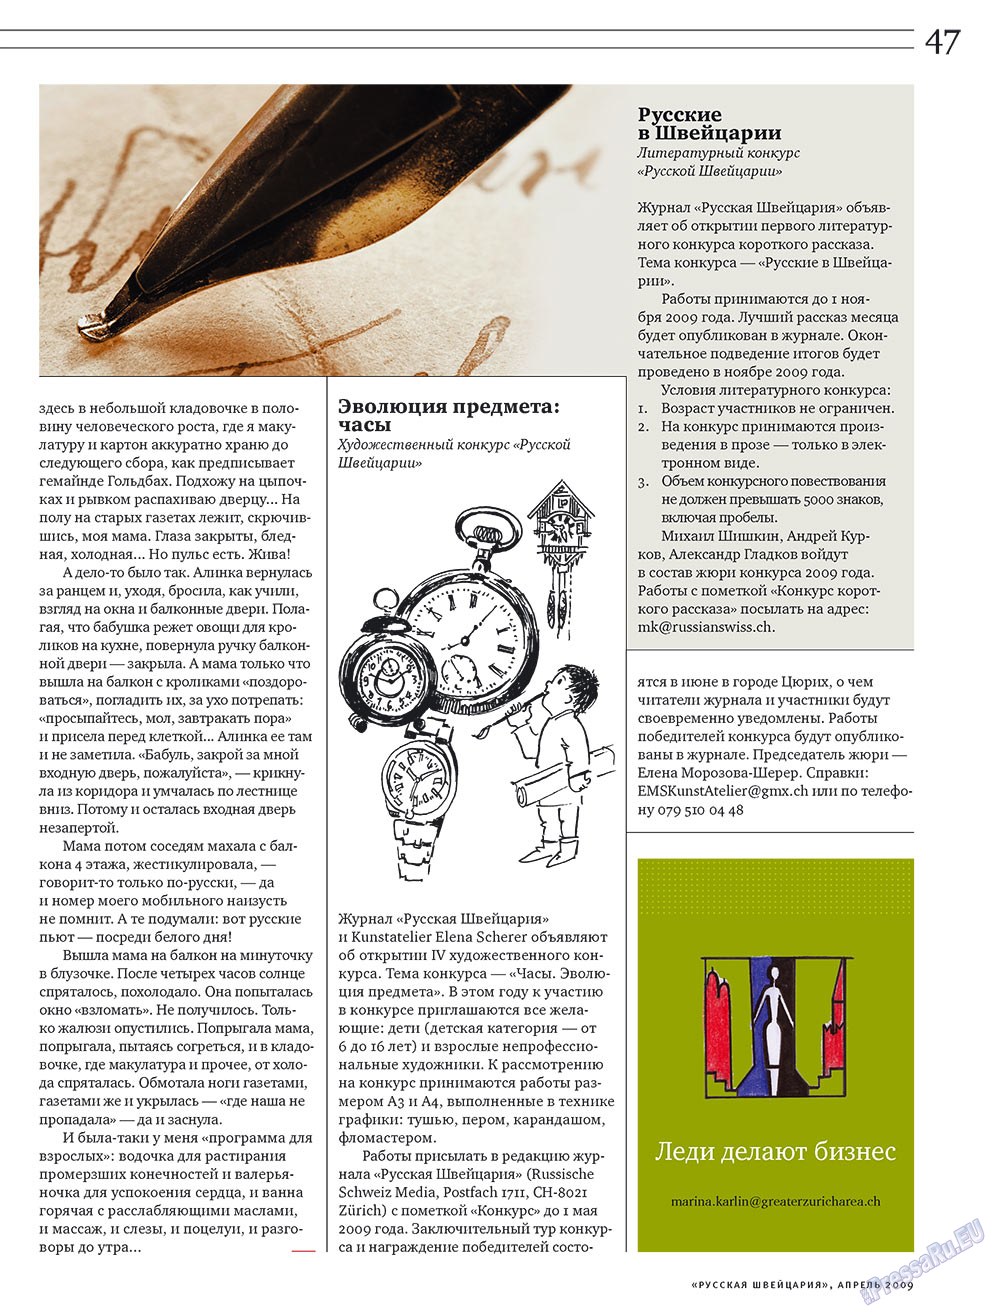 Russkaja Schweizaria (Zeitschrift). 2009 Jahr, Ausgabe 4, Seite 47